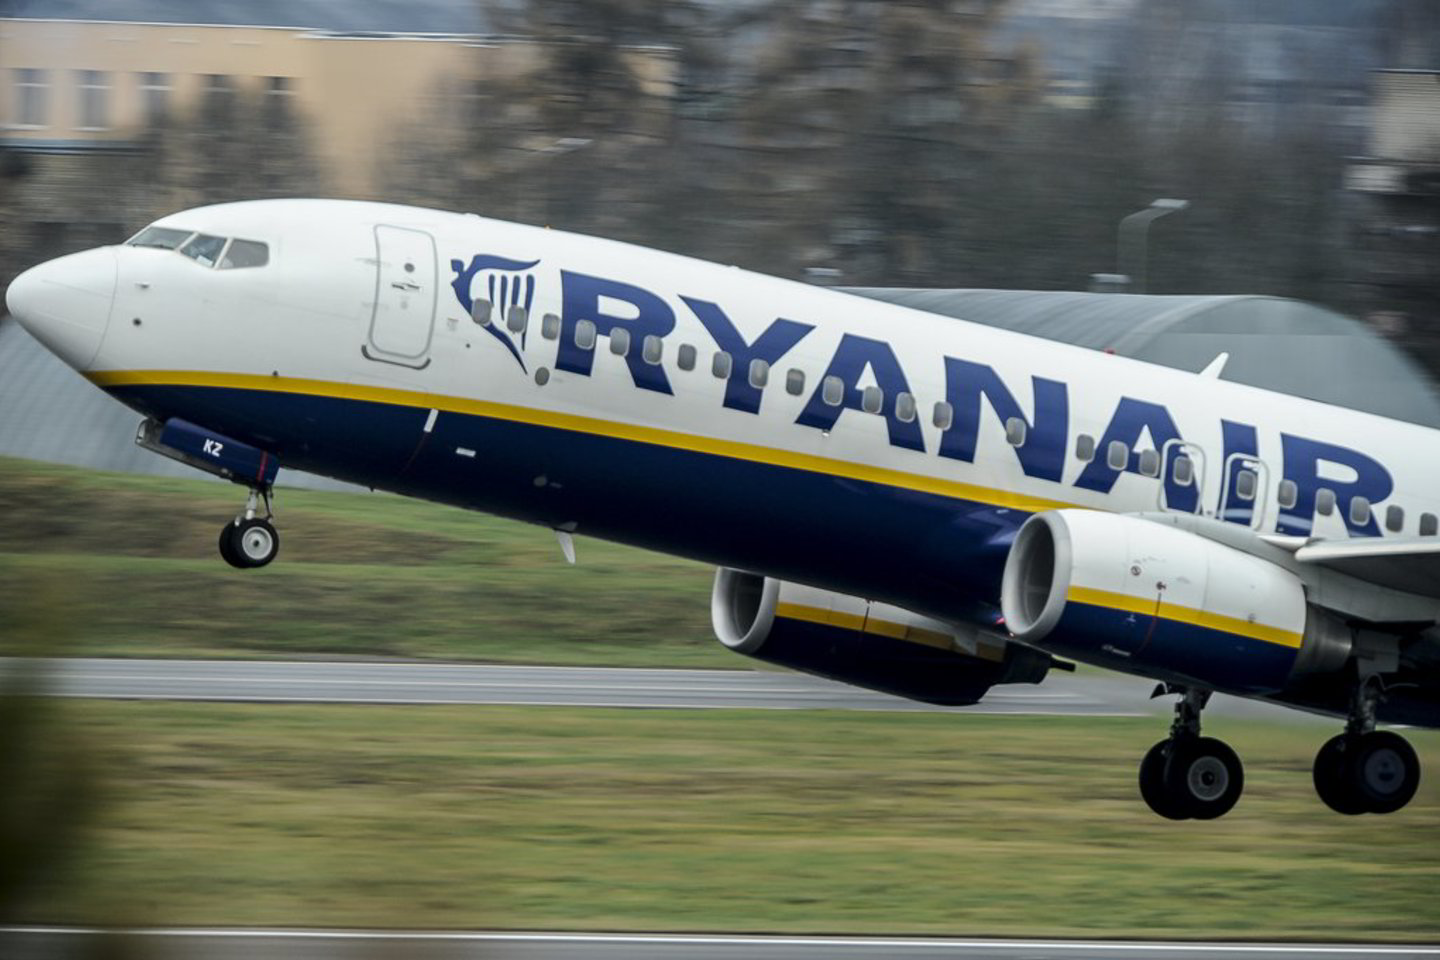 Kyla vis daugiau abejonių, ar "Ryanair" skrydžiai yra saugūs.<br>V. Ščiavinsko asociatyvi nuotrauka